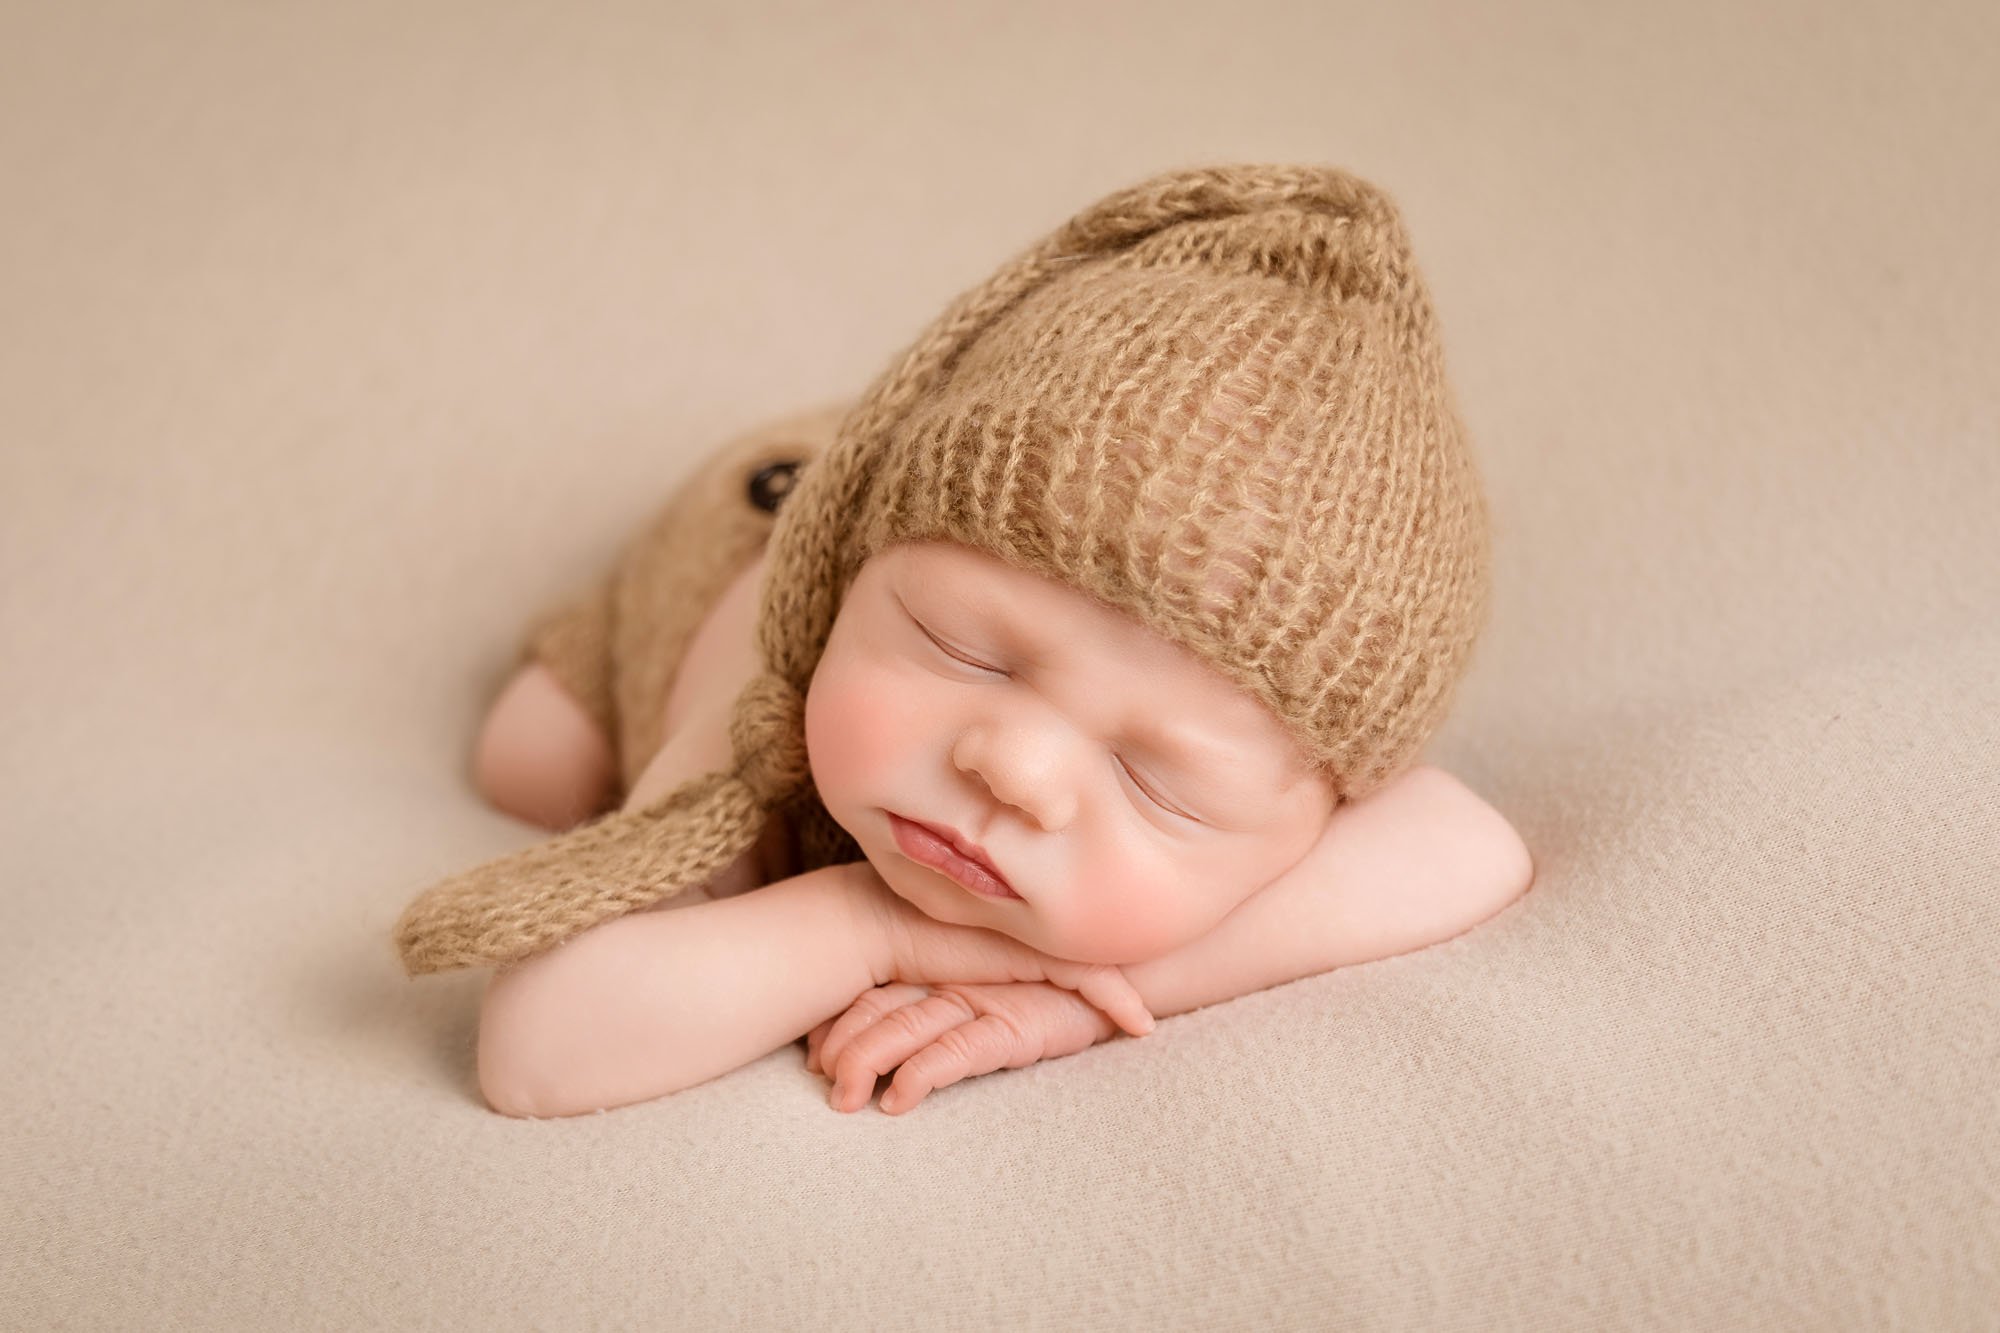 newborn-photography-in-leeds-baby-boy-neutral-cream-brown-sleepy-hat.jpg